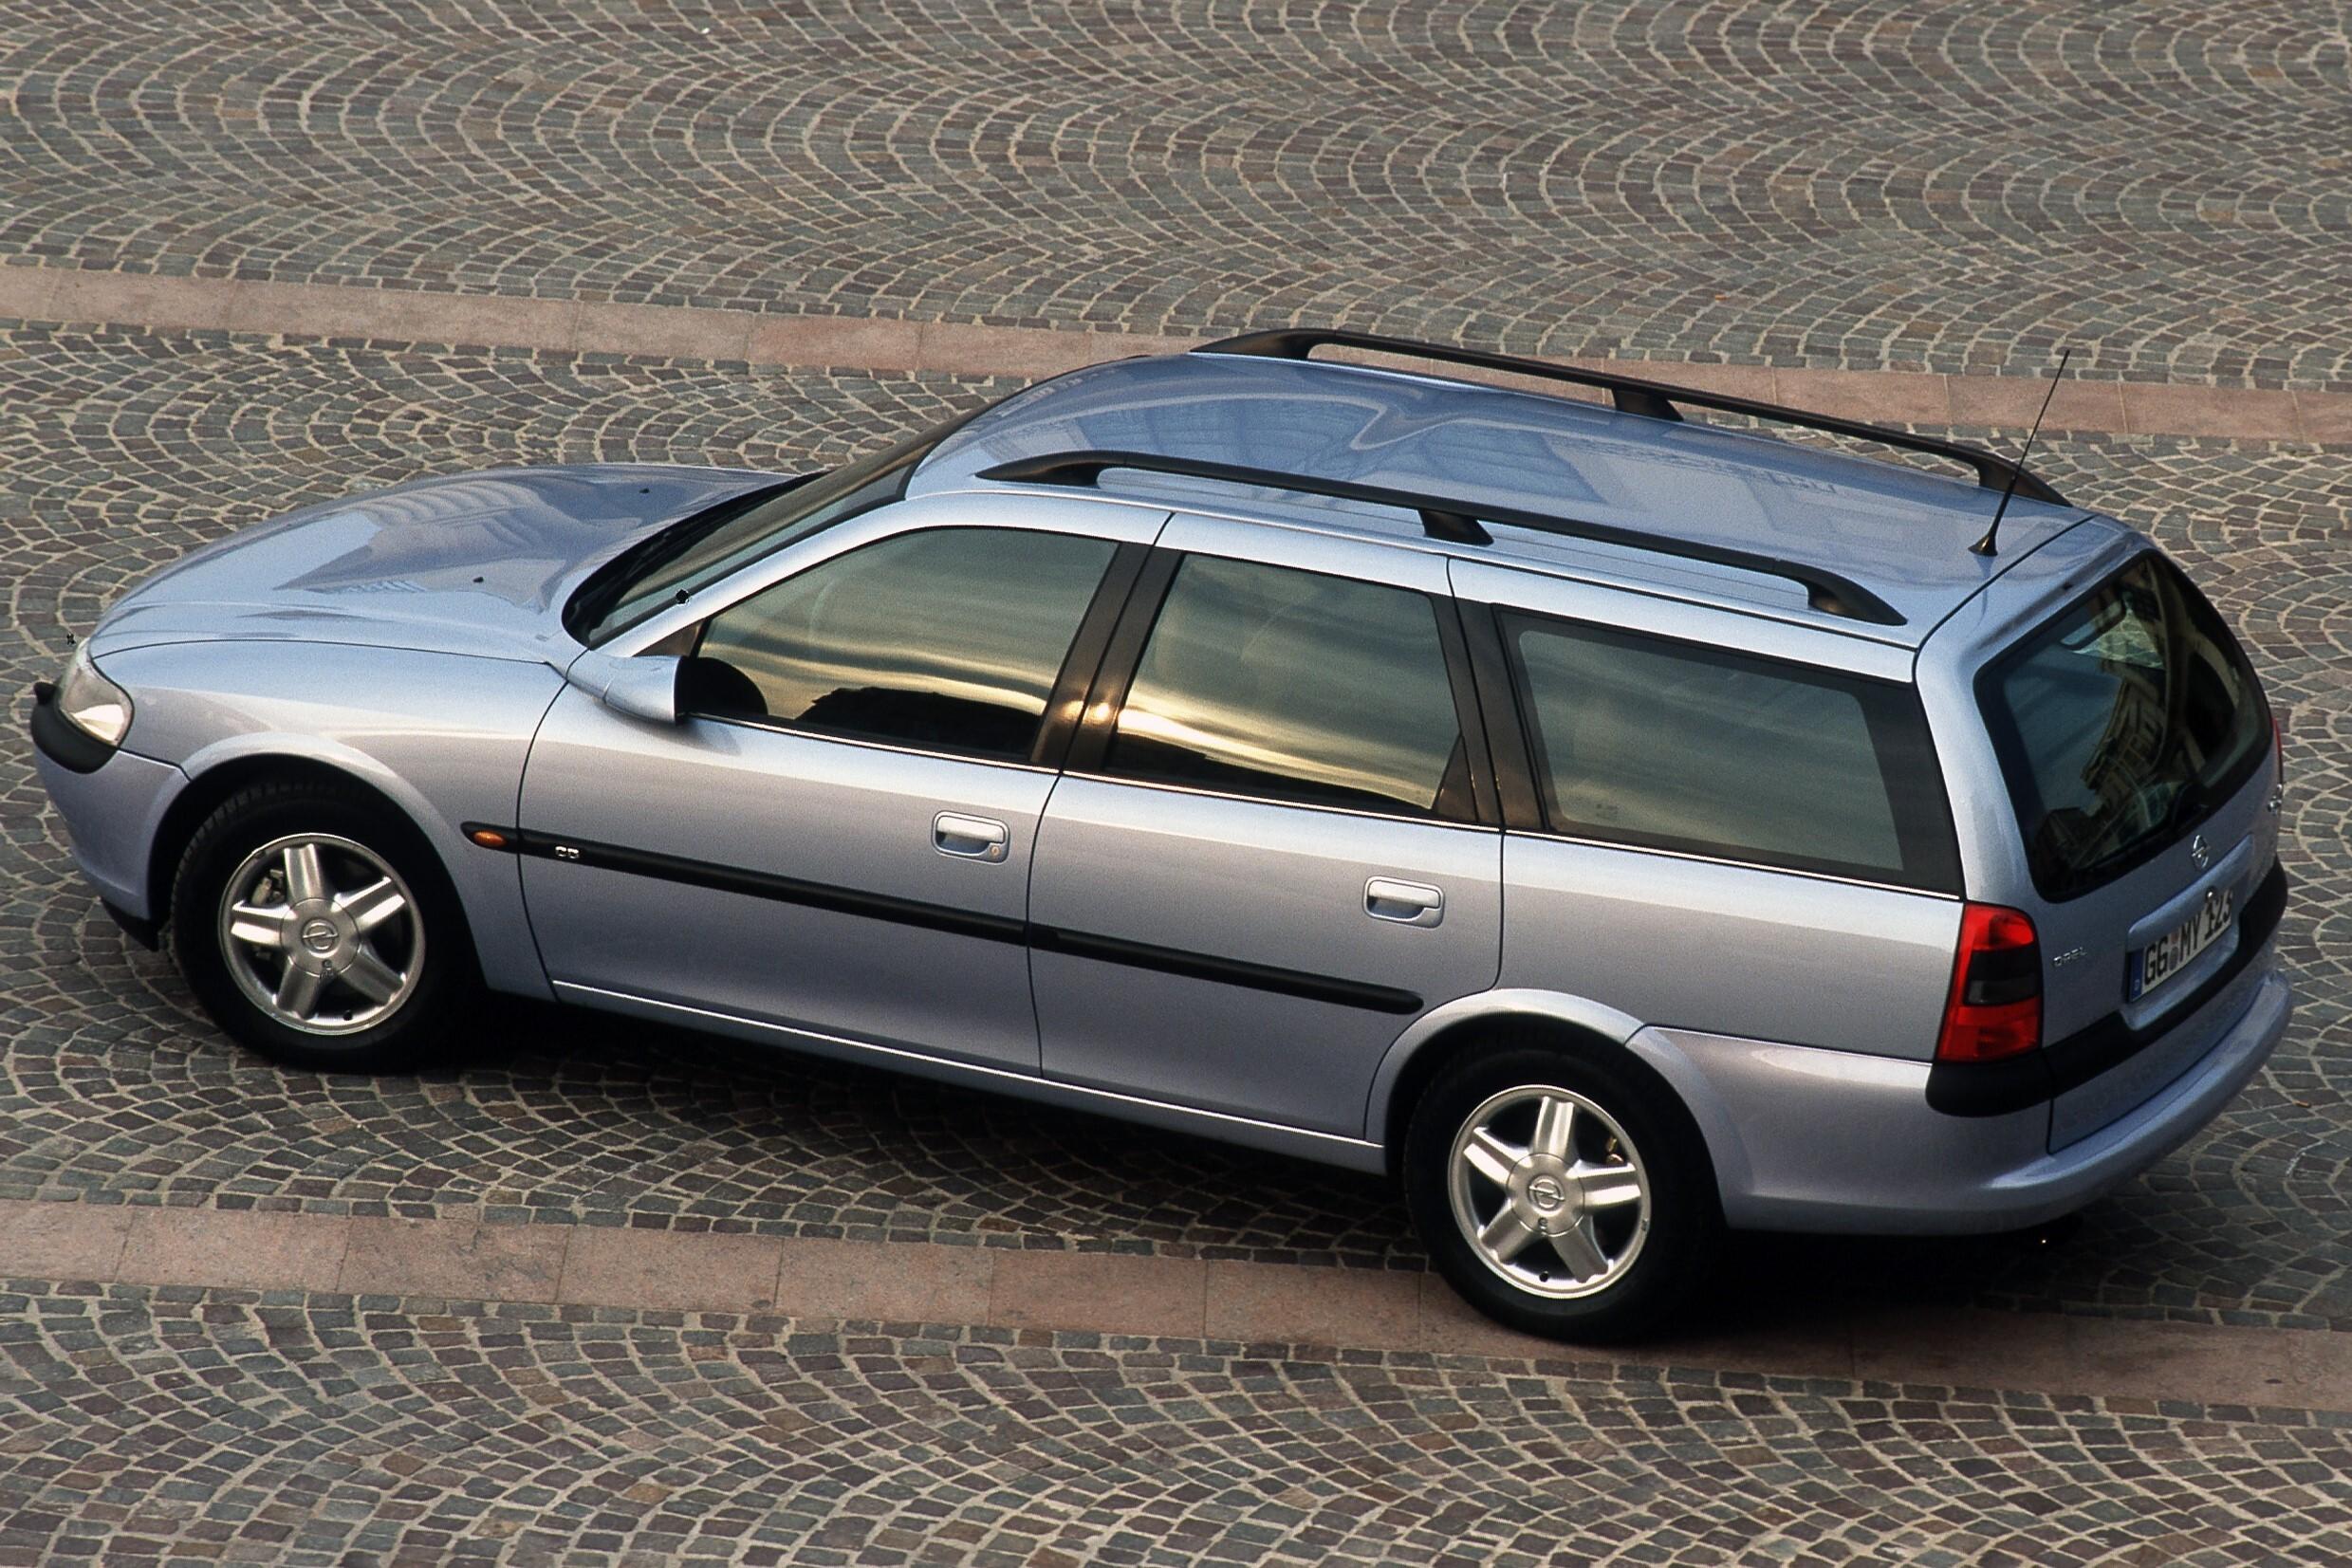 Вектра караван. Opel Vectra Caravan. Opel Vectra b 1998 универсал. Opel Vectra b универсал 1999. Опель Вектра b универсал 1998.